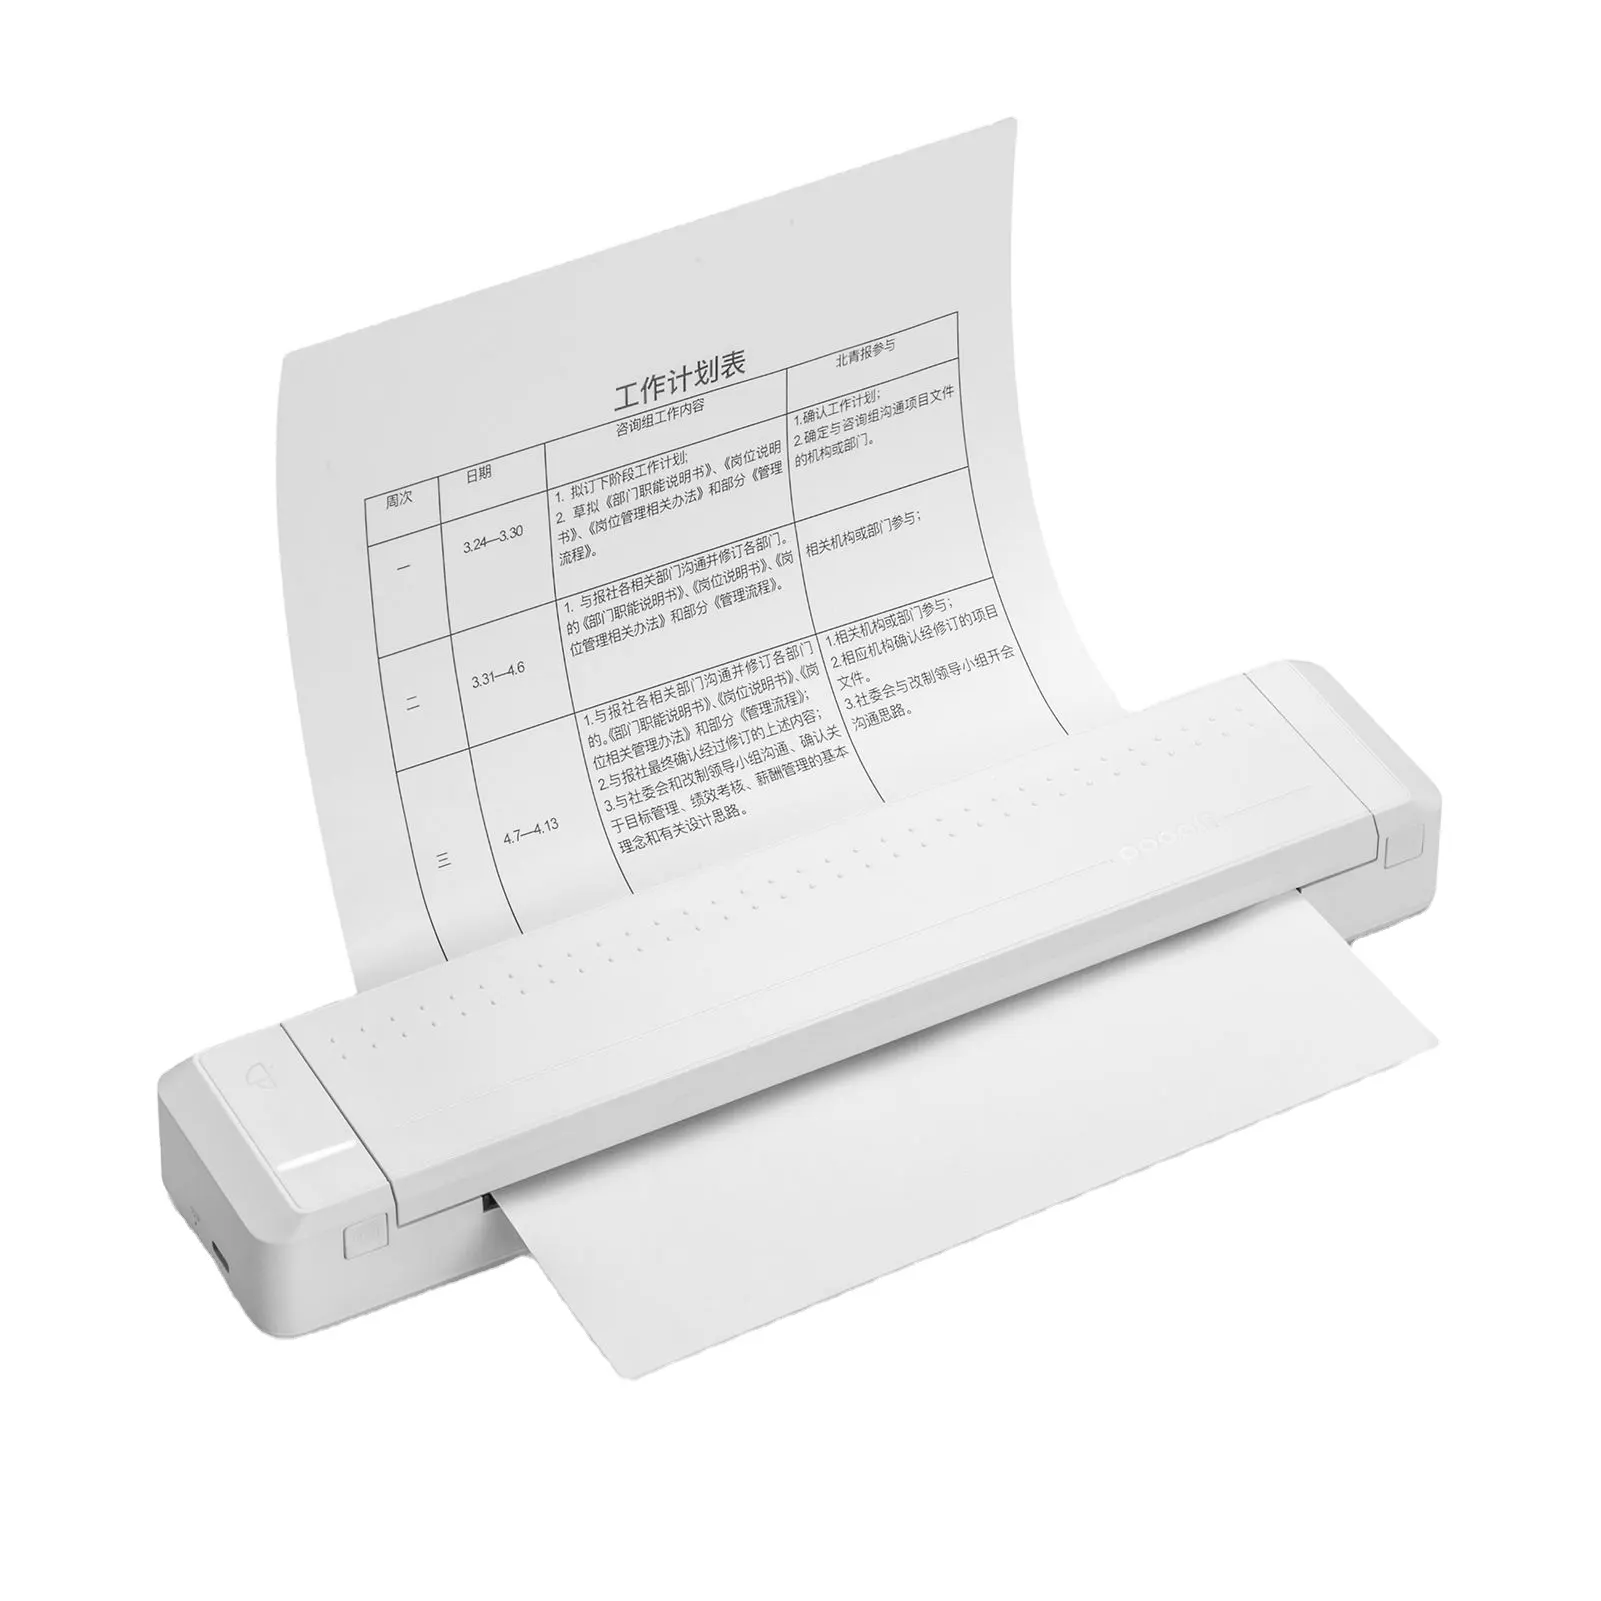 Stampante JEPOD Poooli A4 stampante Wireless portatile Mini BT foto stampante termica per documenti A4